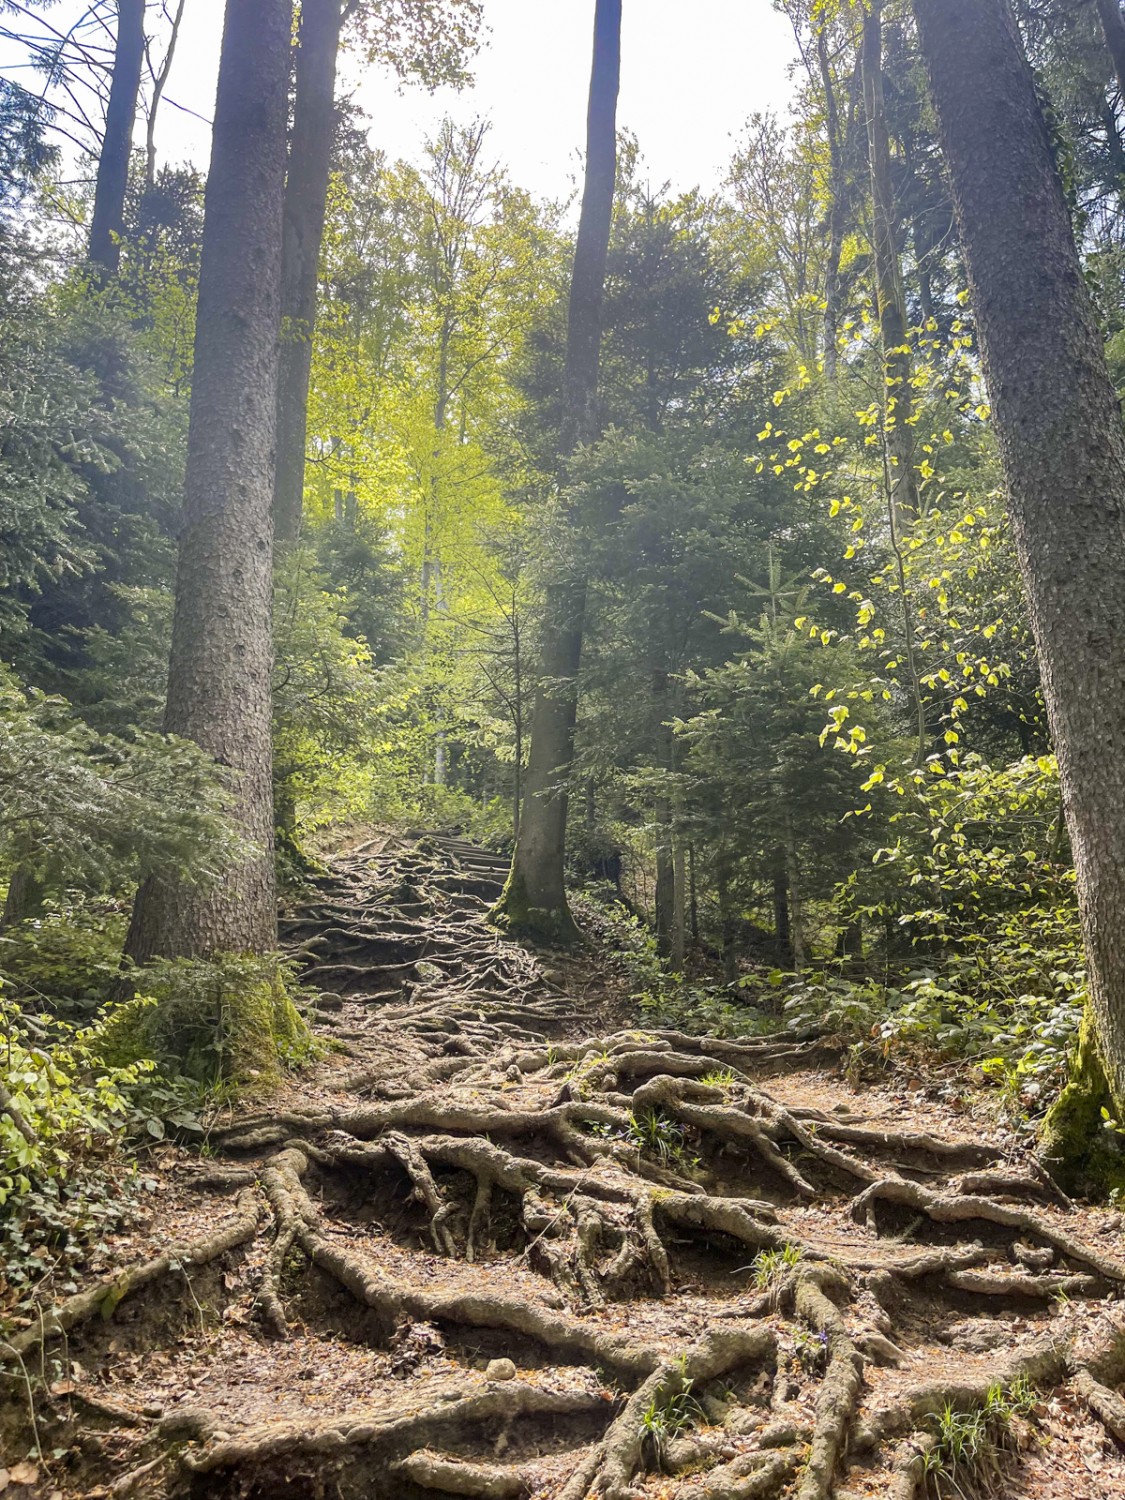 Il sentiero attraverso il bosco è a tratti disseminato di radici affioranti. Foto: Michael Roschi